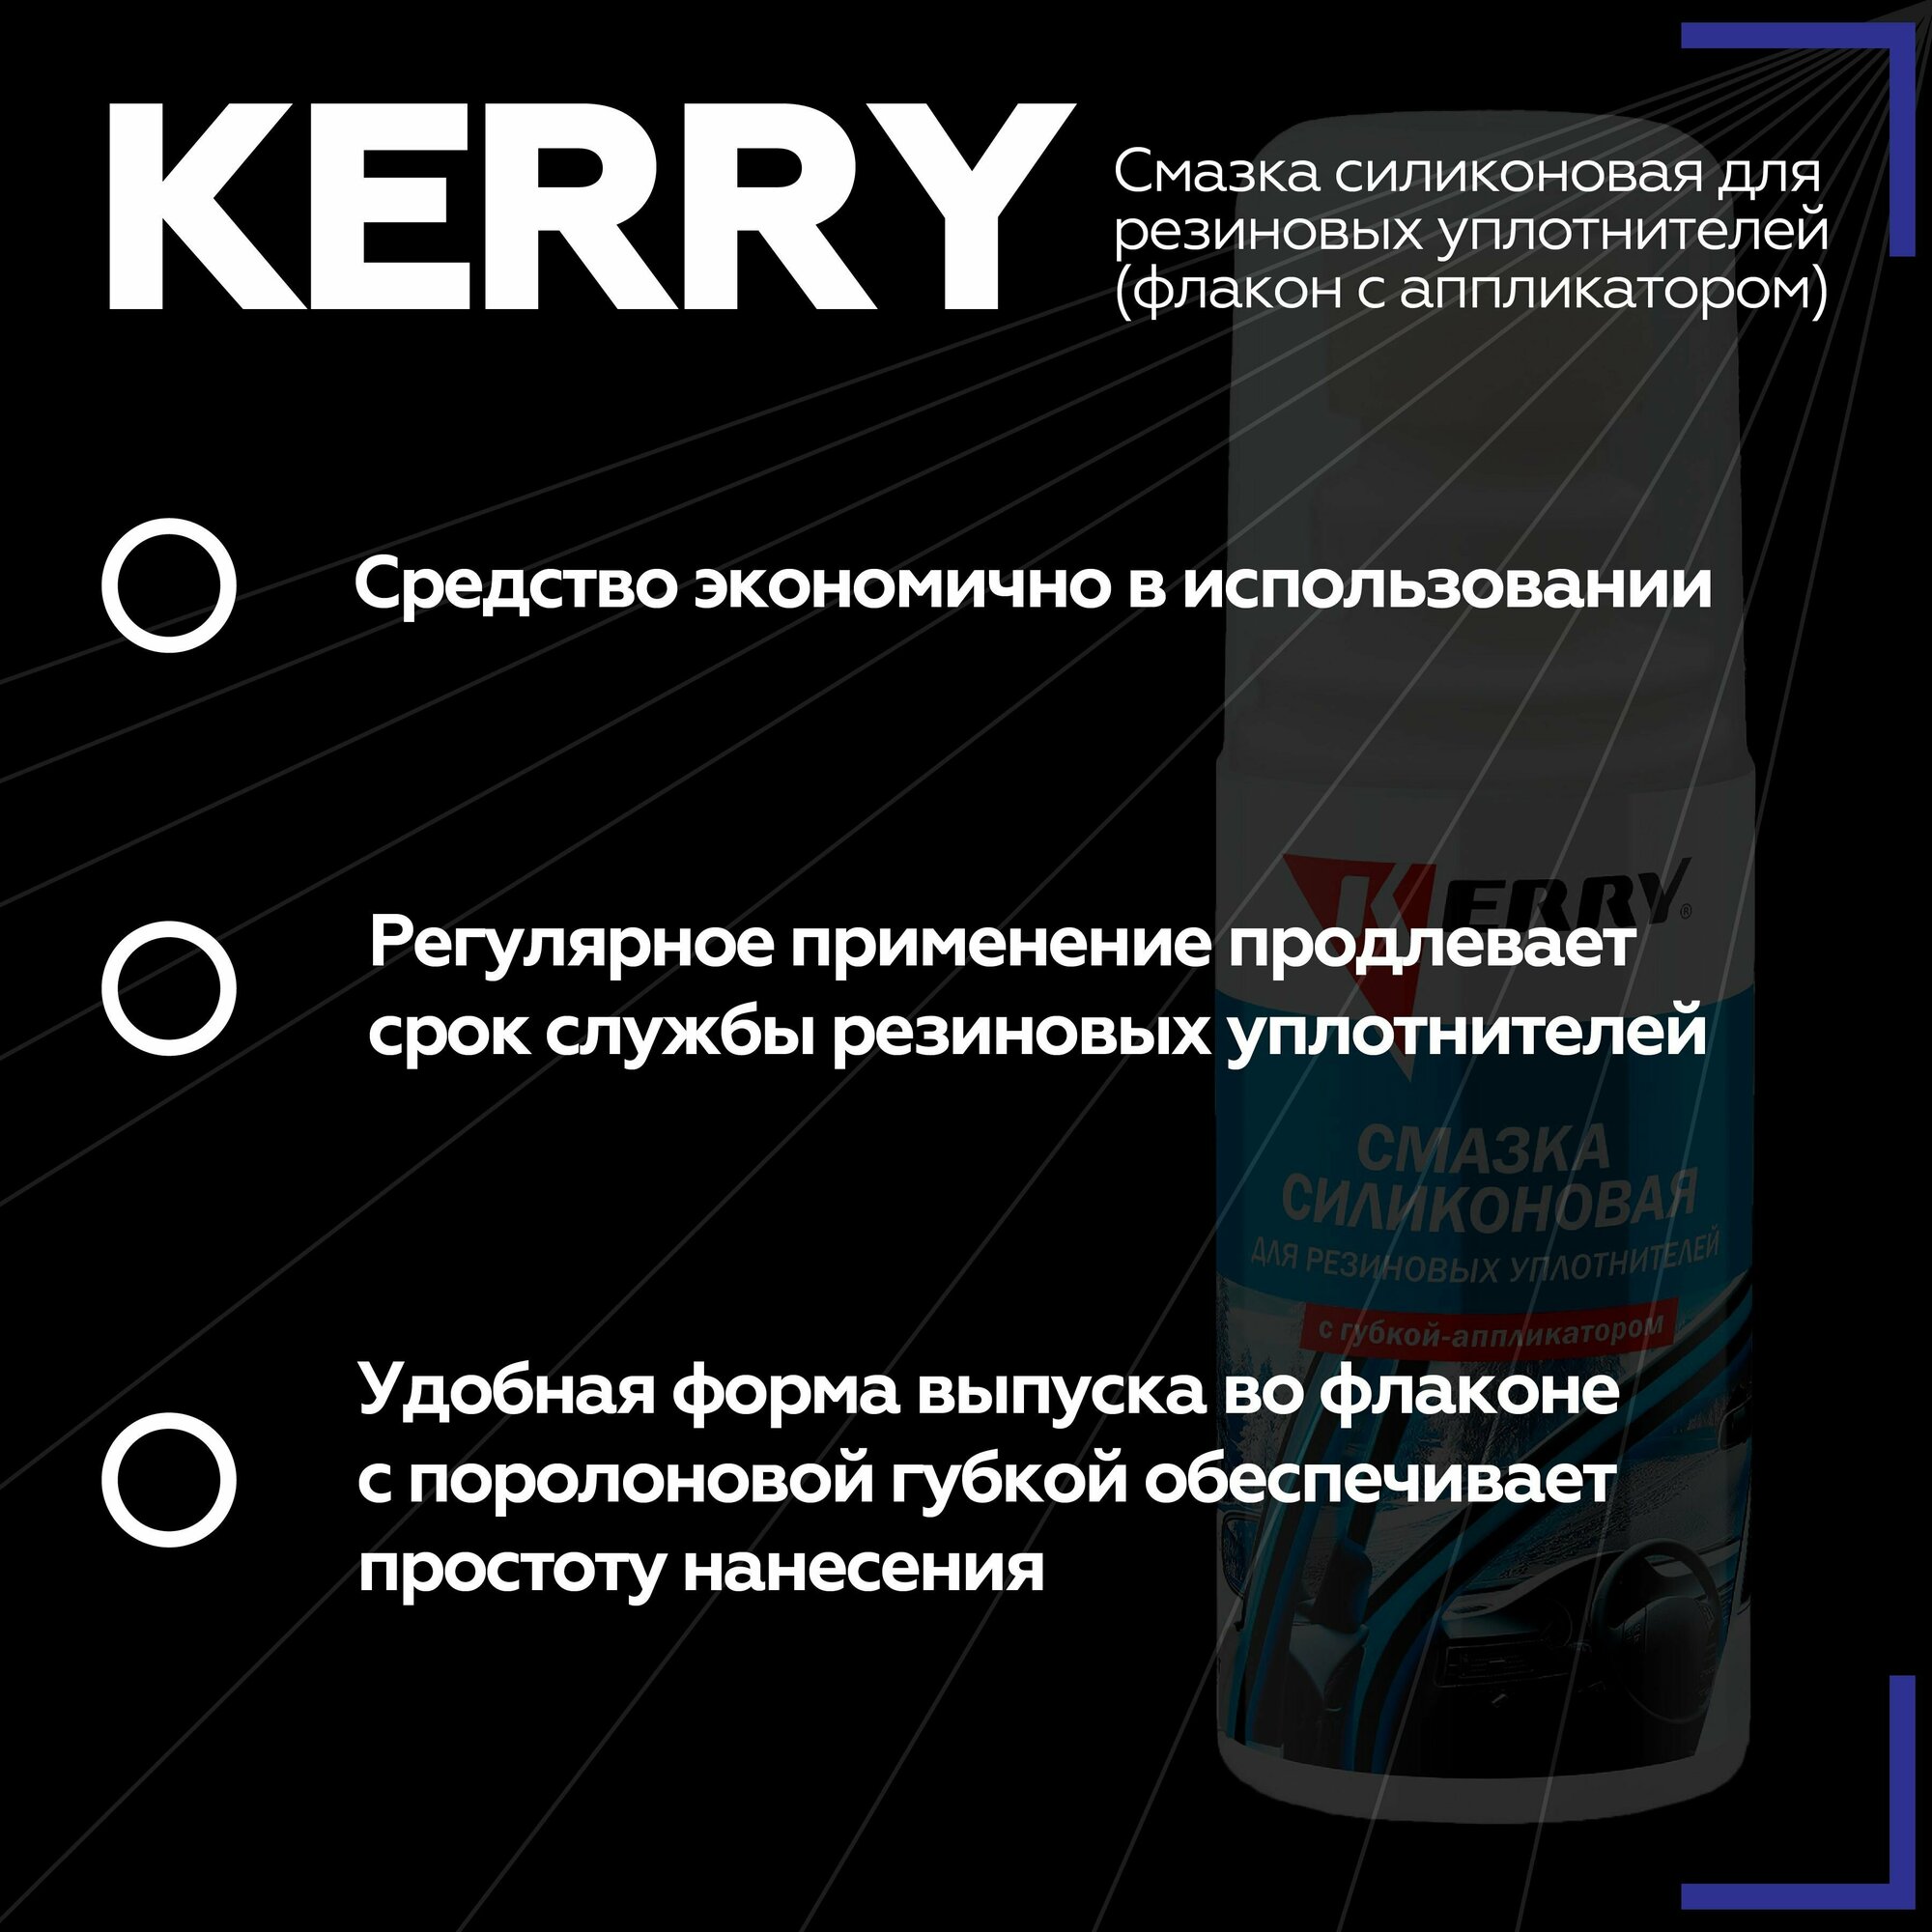 Автомобильнаяазка KERRY Силиконовая с аппликатором для резиновых уплотнителей